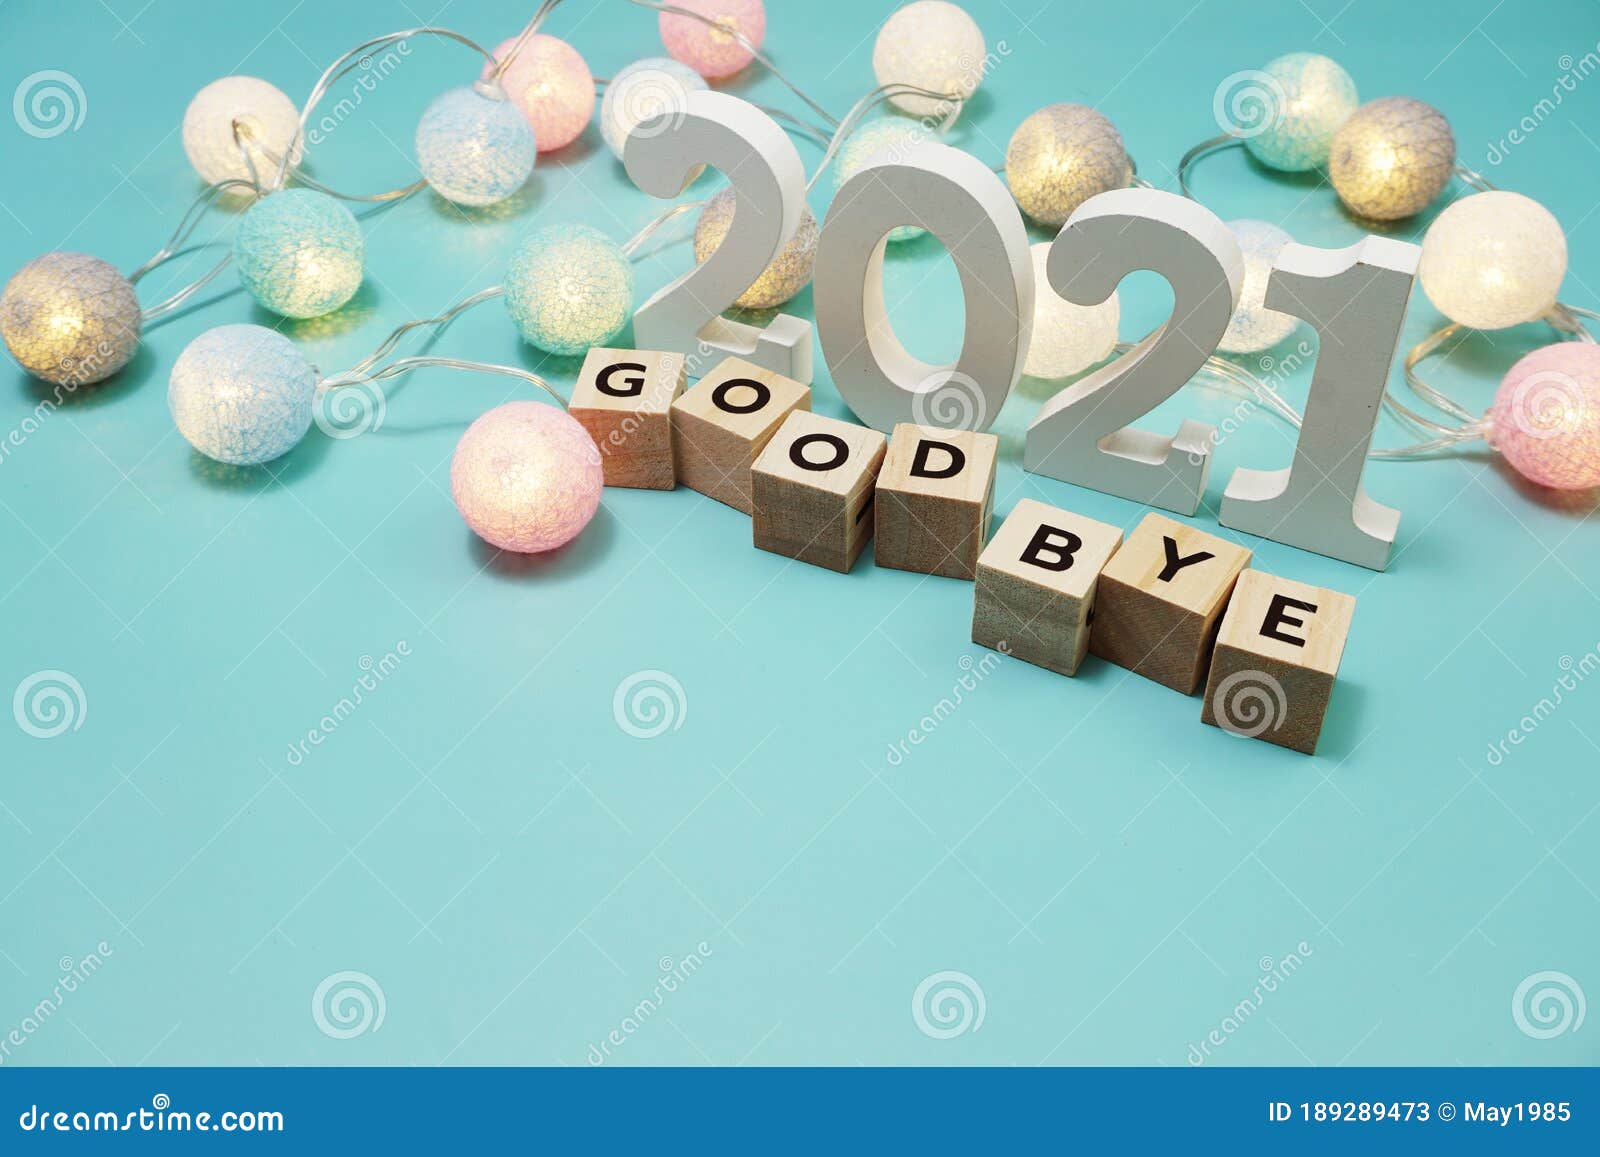 再见2022 你好2023 告别12月迎接1月朋友圈文案图片，愿你新年快乐！_祝福_时间_梦想